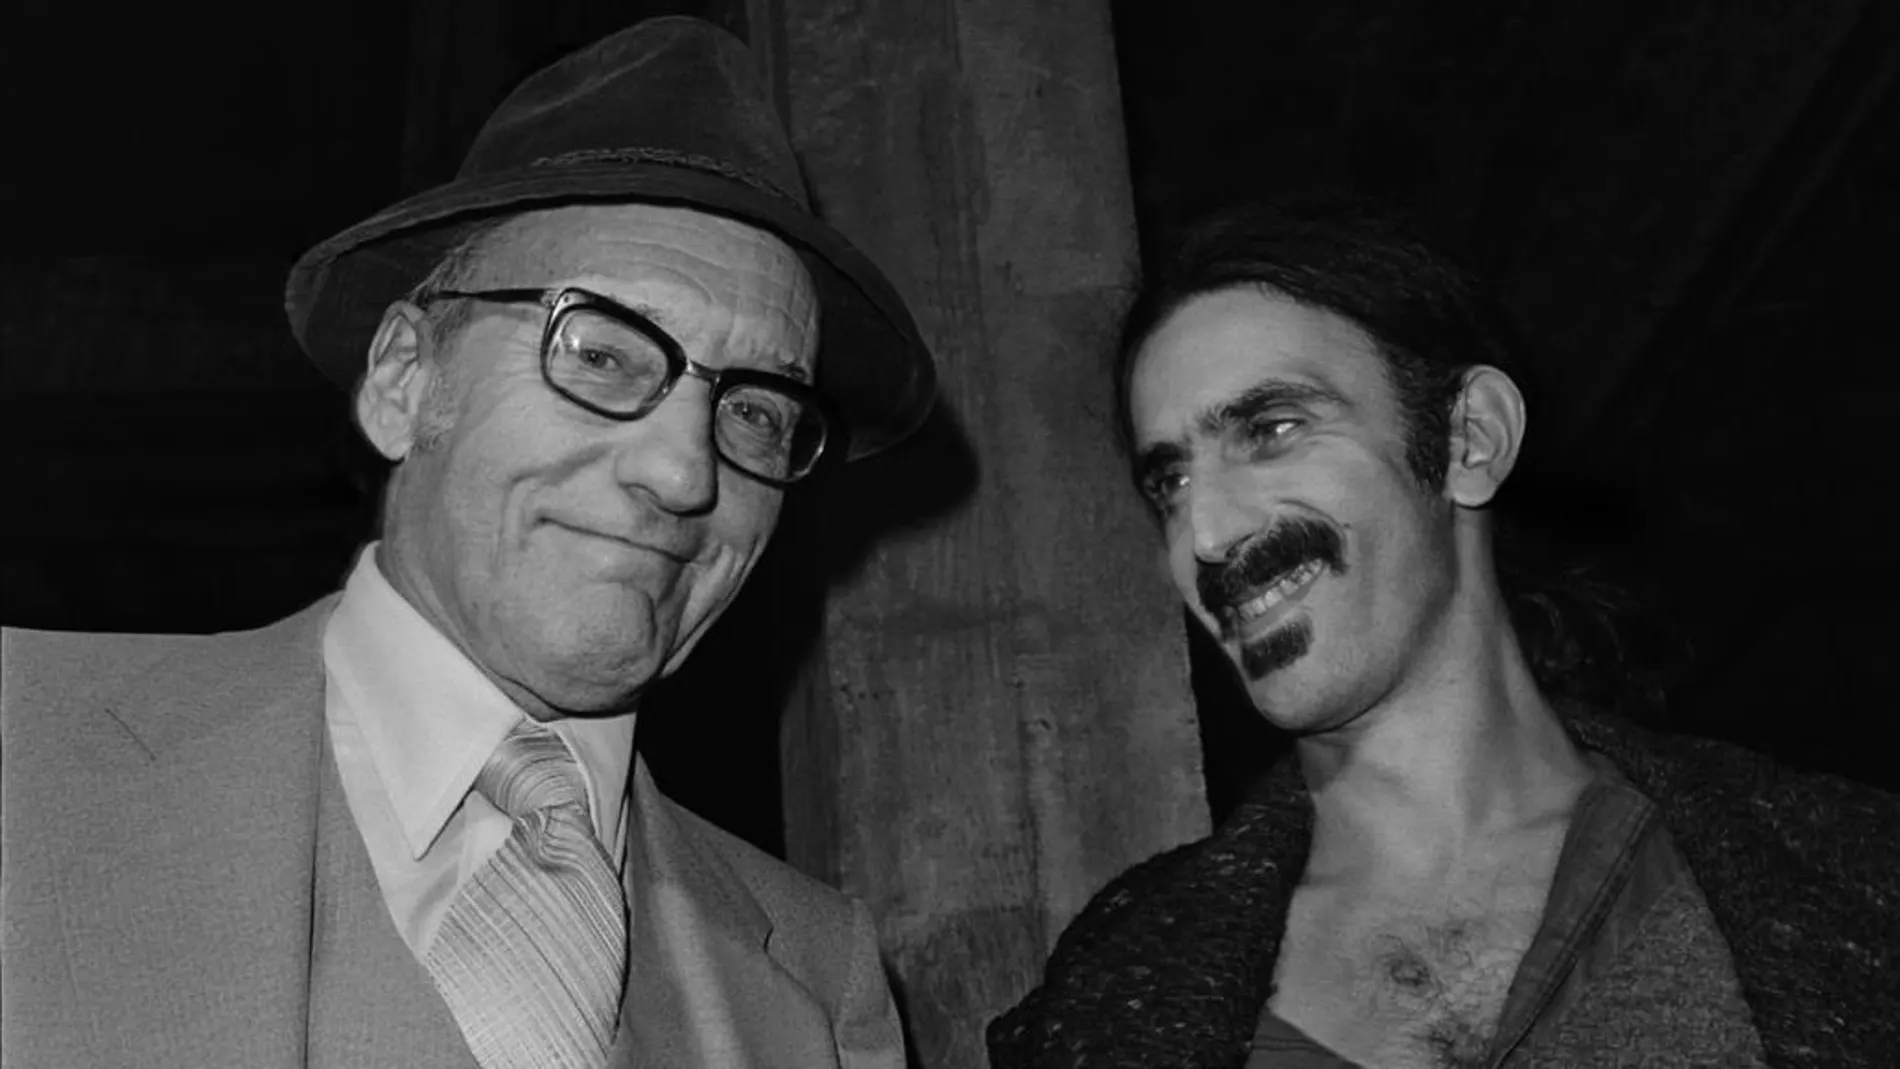 William Burroughsy Frank Zappa, una de las fotografías expuestas en La Térmica